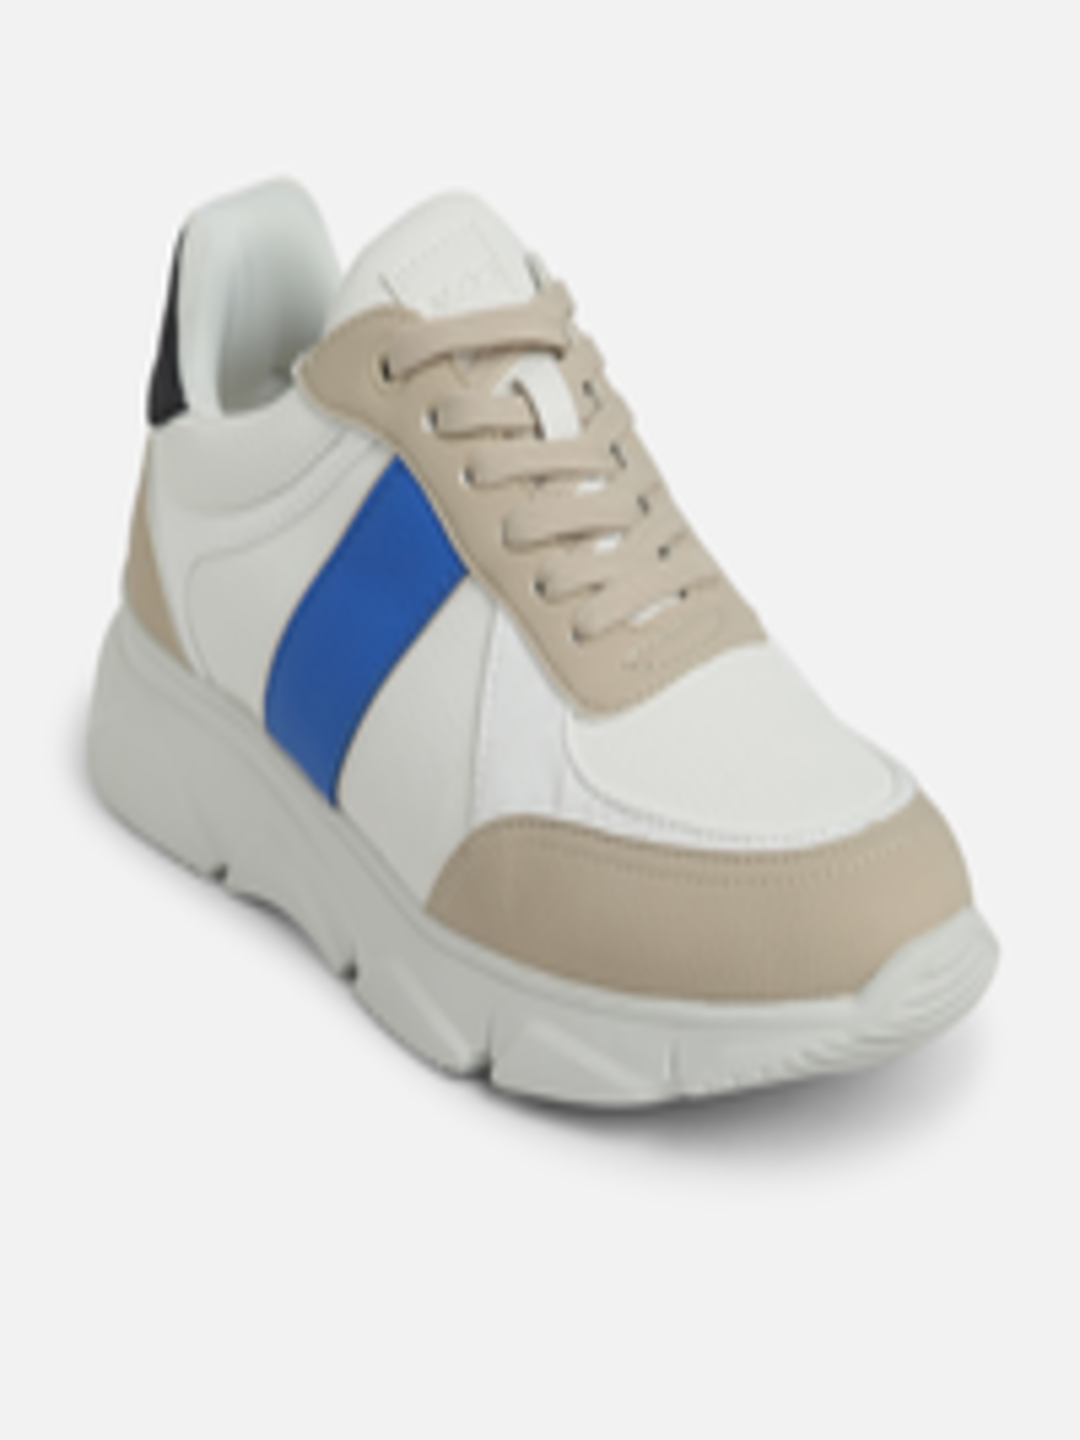 Buy ALDO Men Beige Colourblocked Driving Shoes - Casual Shoes for Men